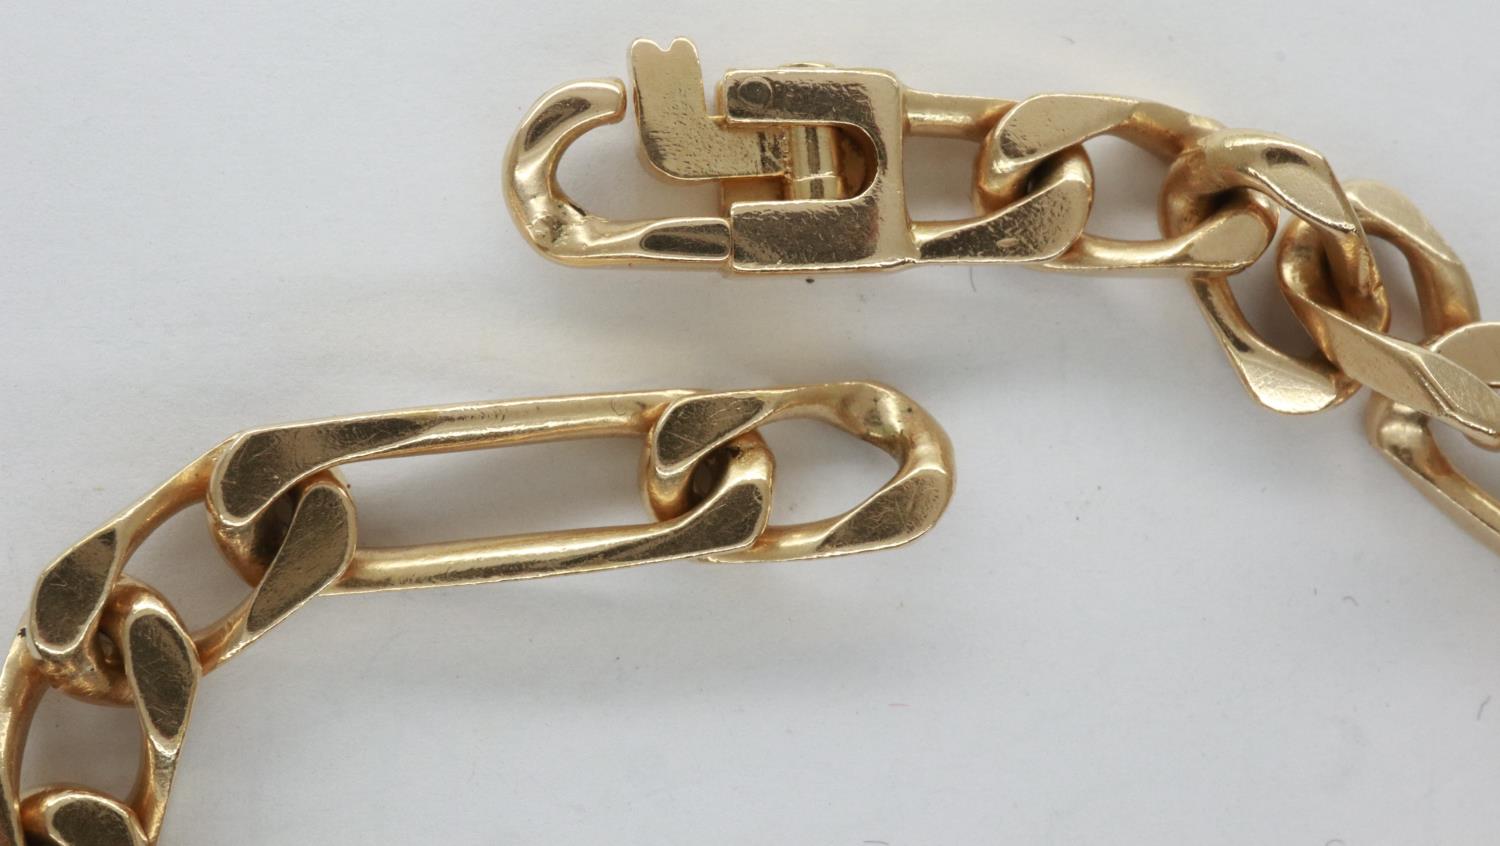 Presumed 9ct gold identity bracelet, inscribed Julie, L: 21 cm, 16.1g. P&P Group 1 (£14+VAT for - Image 3 of 3